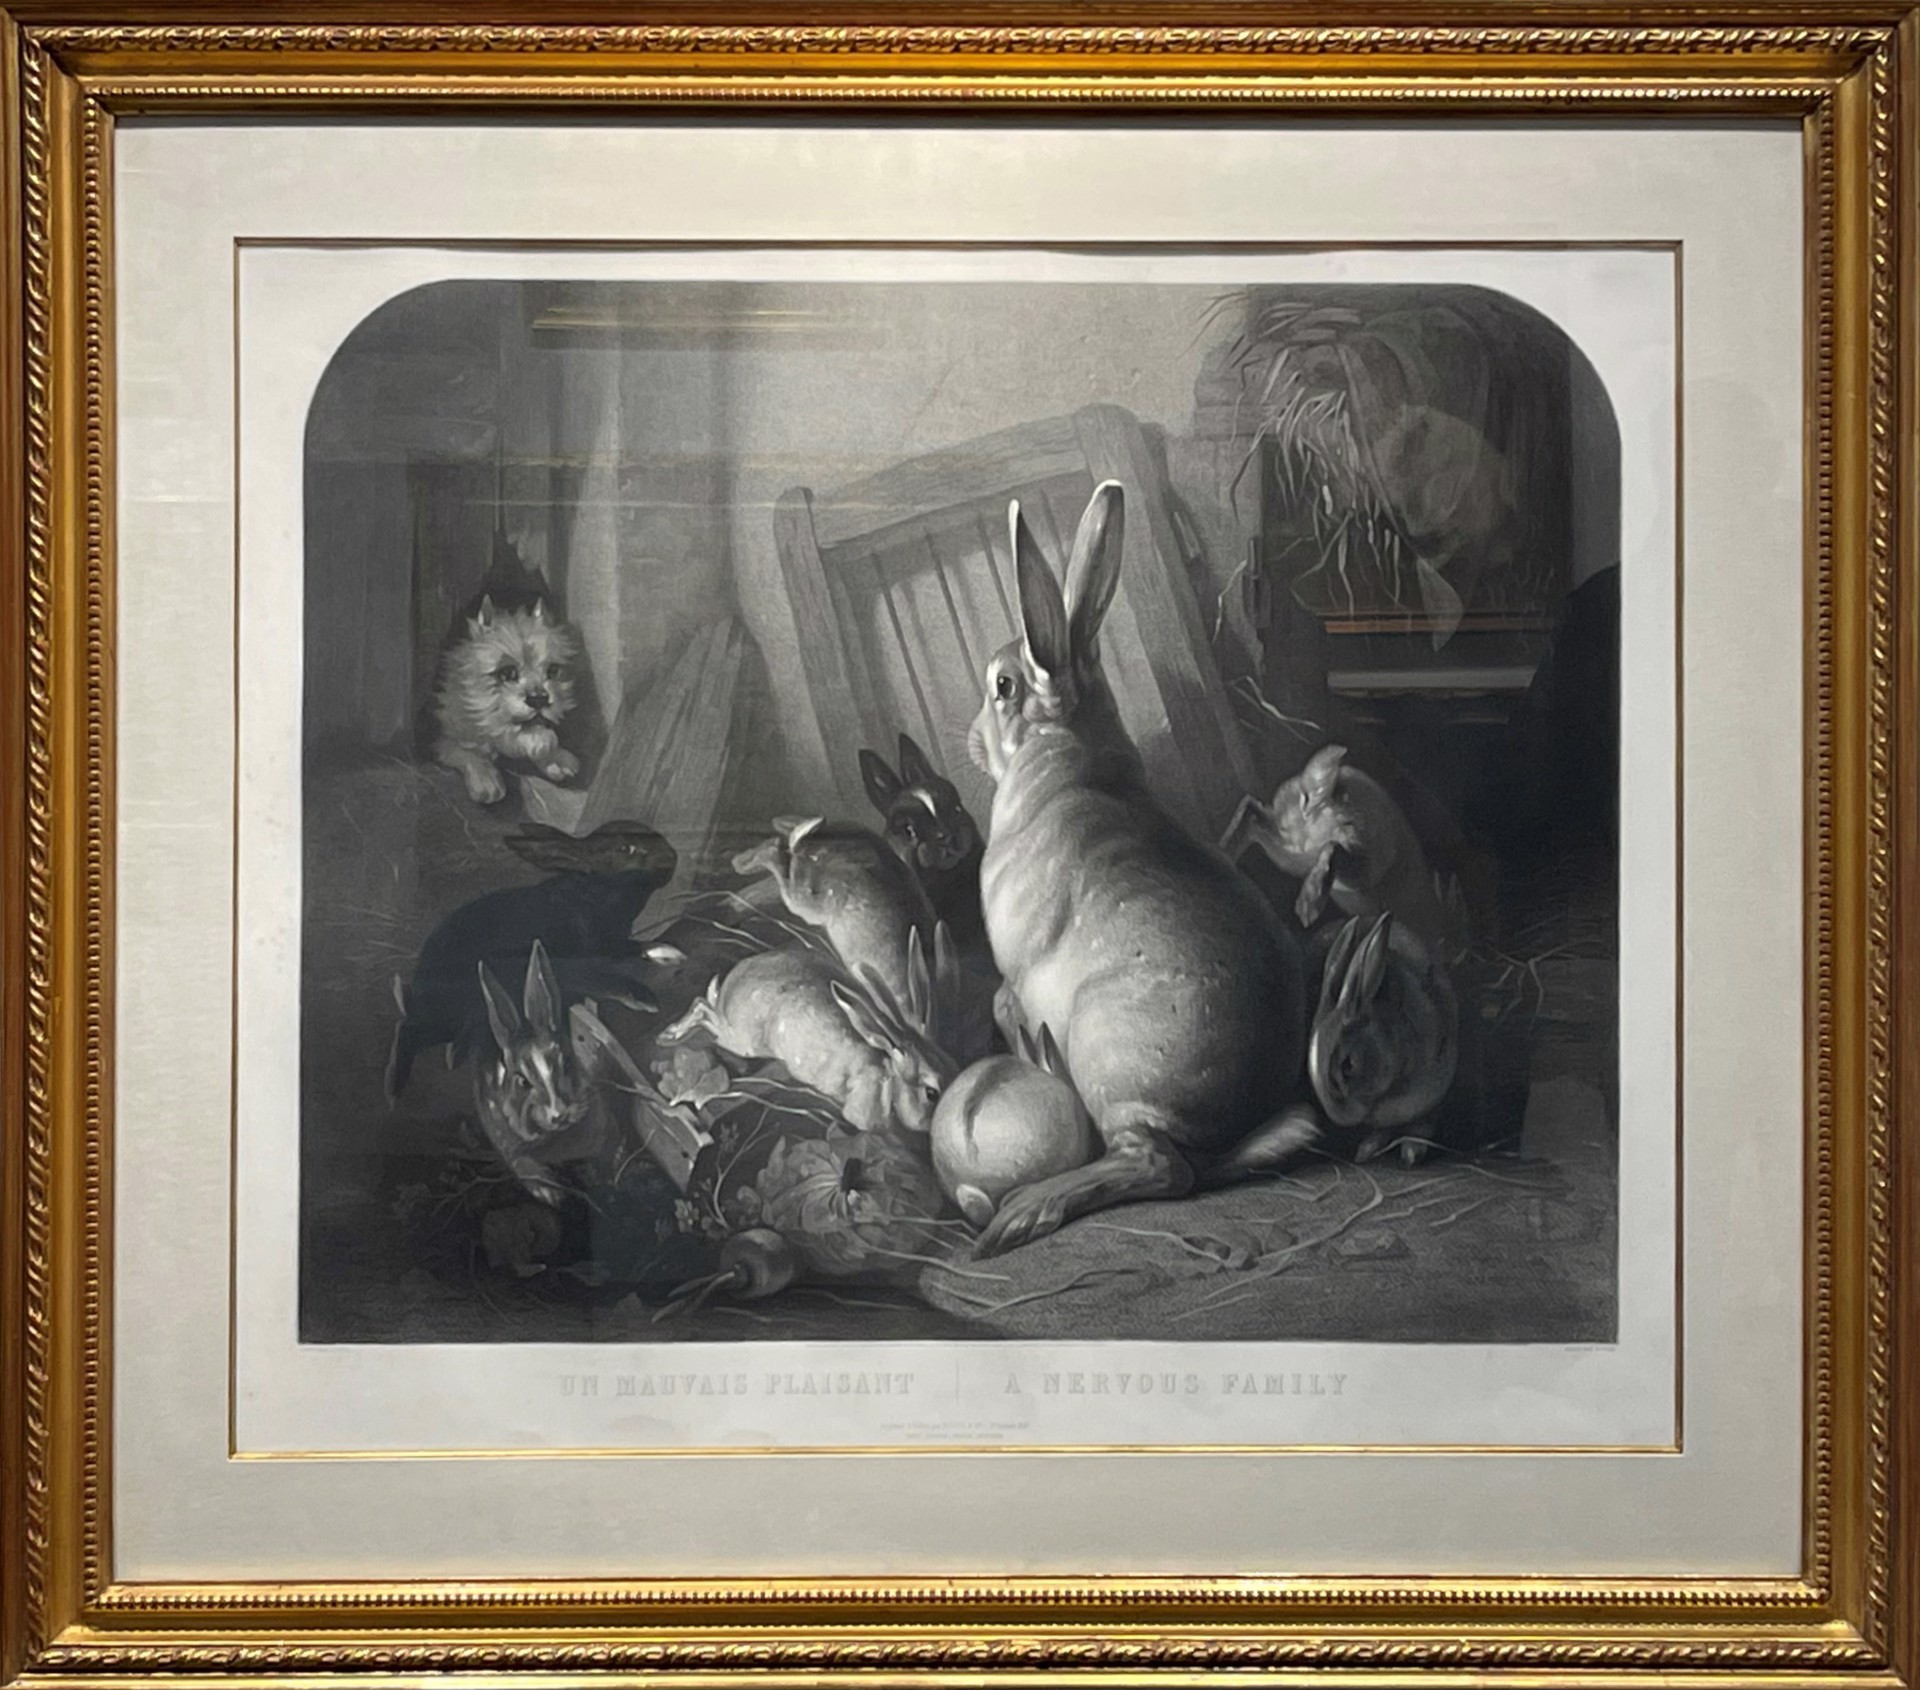 A Nervous Family, 1855/ Un Mauvais Plaisant by Cottin